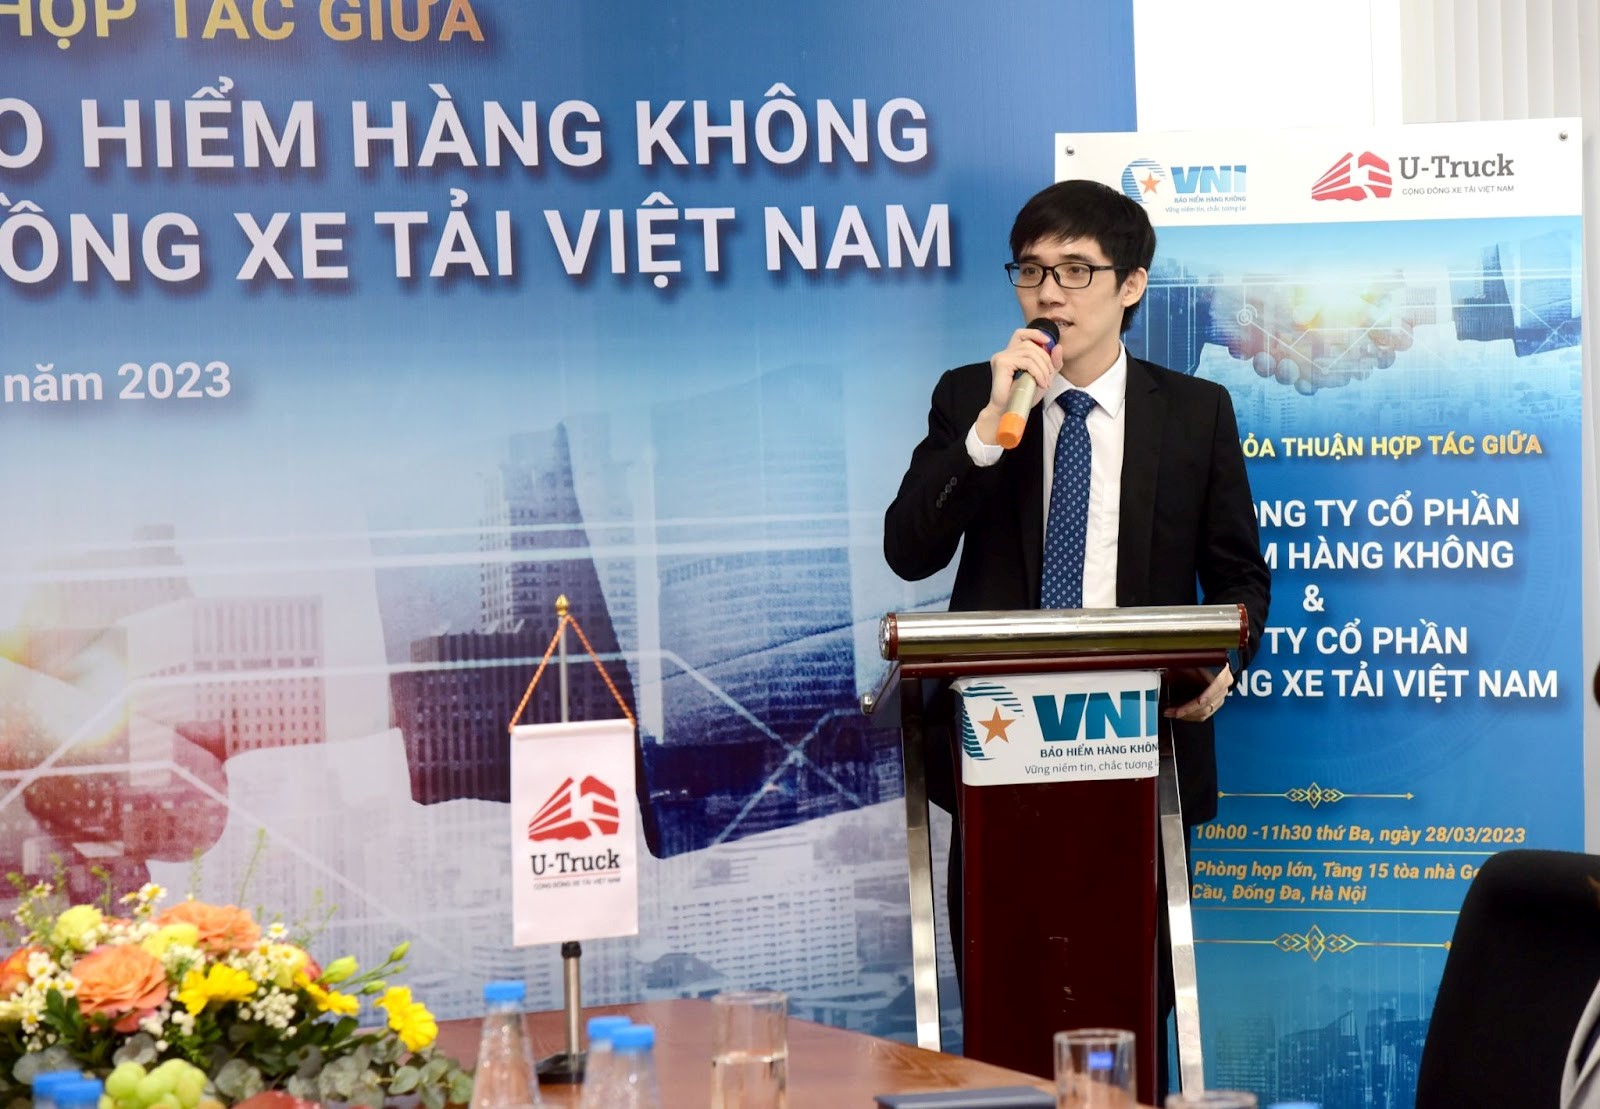 Ông Lê Văn Tính - Giám đốc Công ty U-Truck phát biểu trong buổi lễ